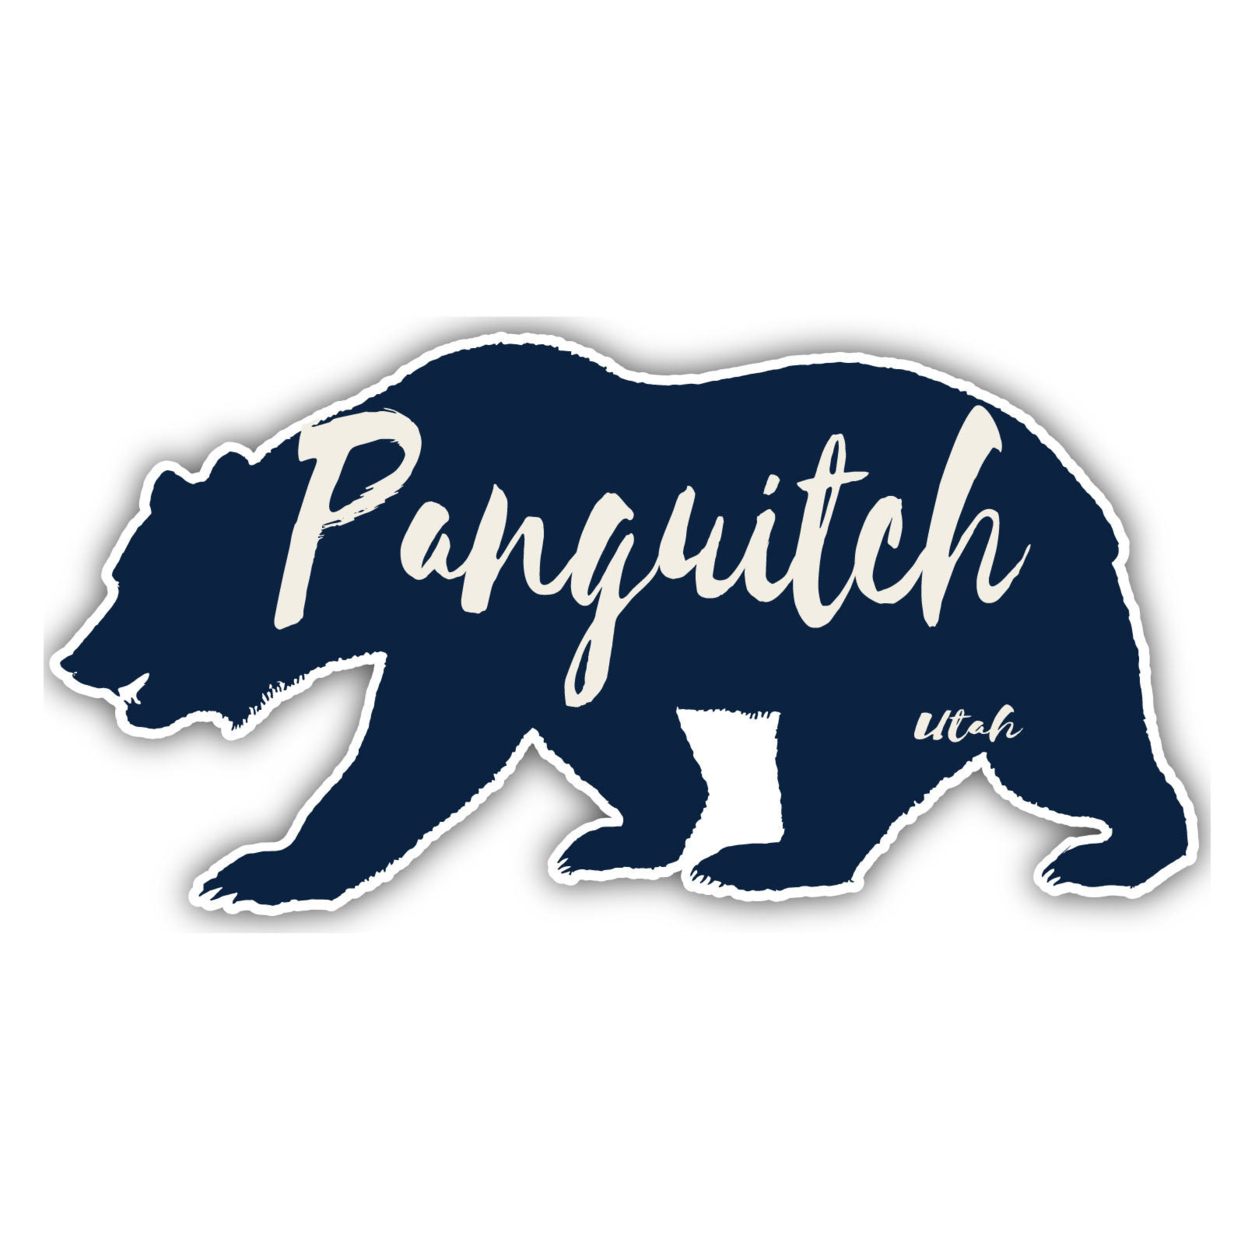 Panguitch Utah Souvenir Decorative Stickers (Choose Theme And Size) - Single Unit, 2-Inch, Bear